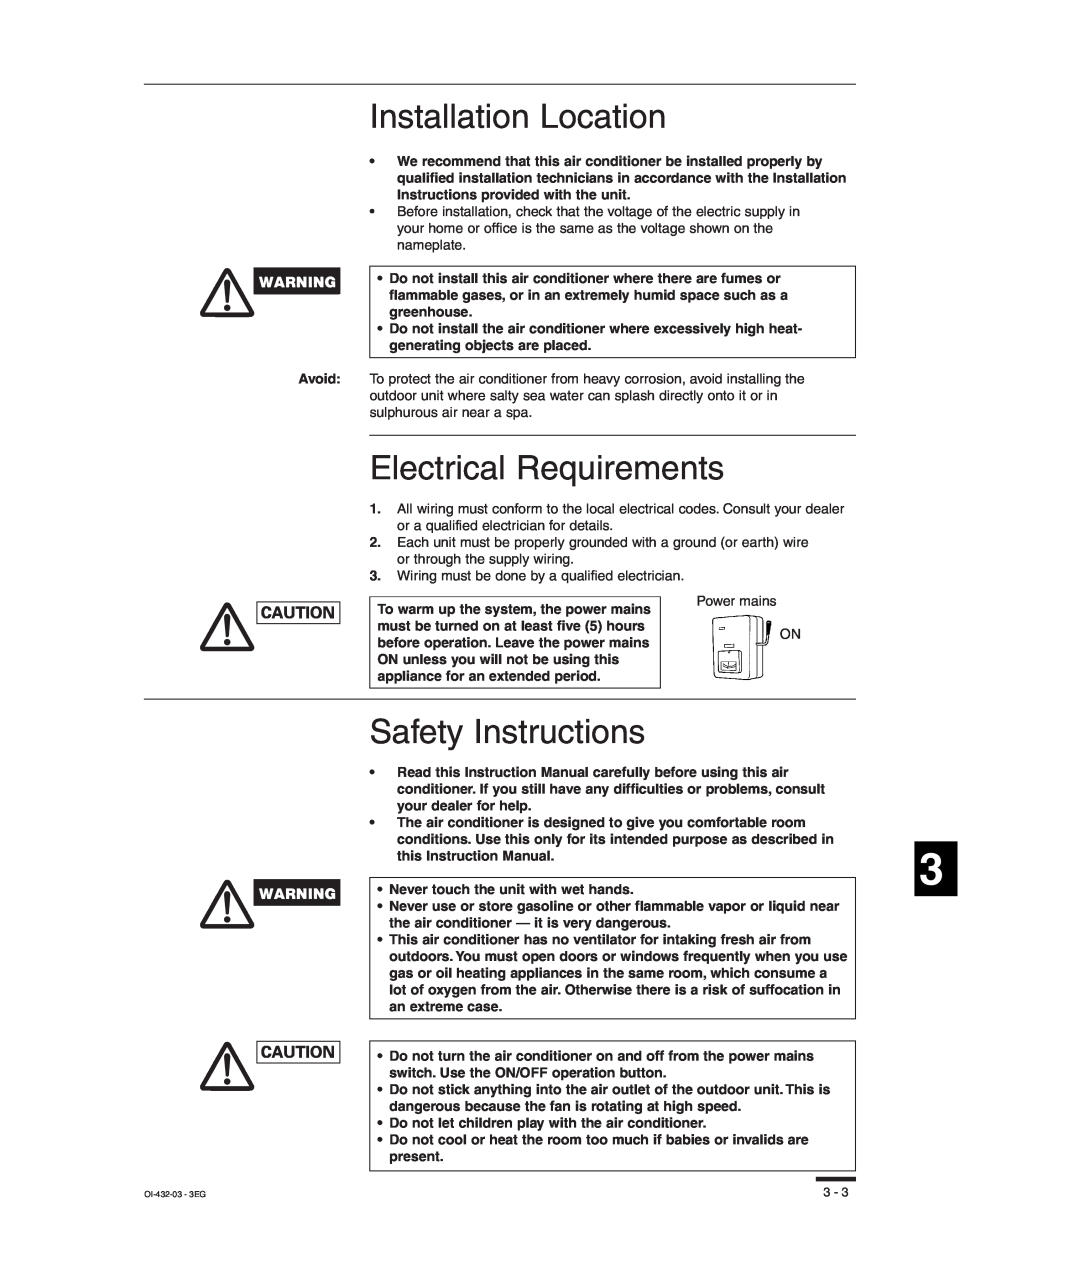 Sanyo SHA-KC64UG, TM-SH80UG, RCS-SH80UG Installation Location, Electrical Requirements, Safety Instructions, OI-432-03- 3EG 